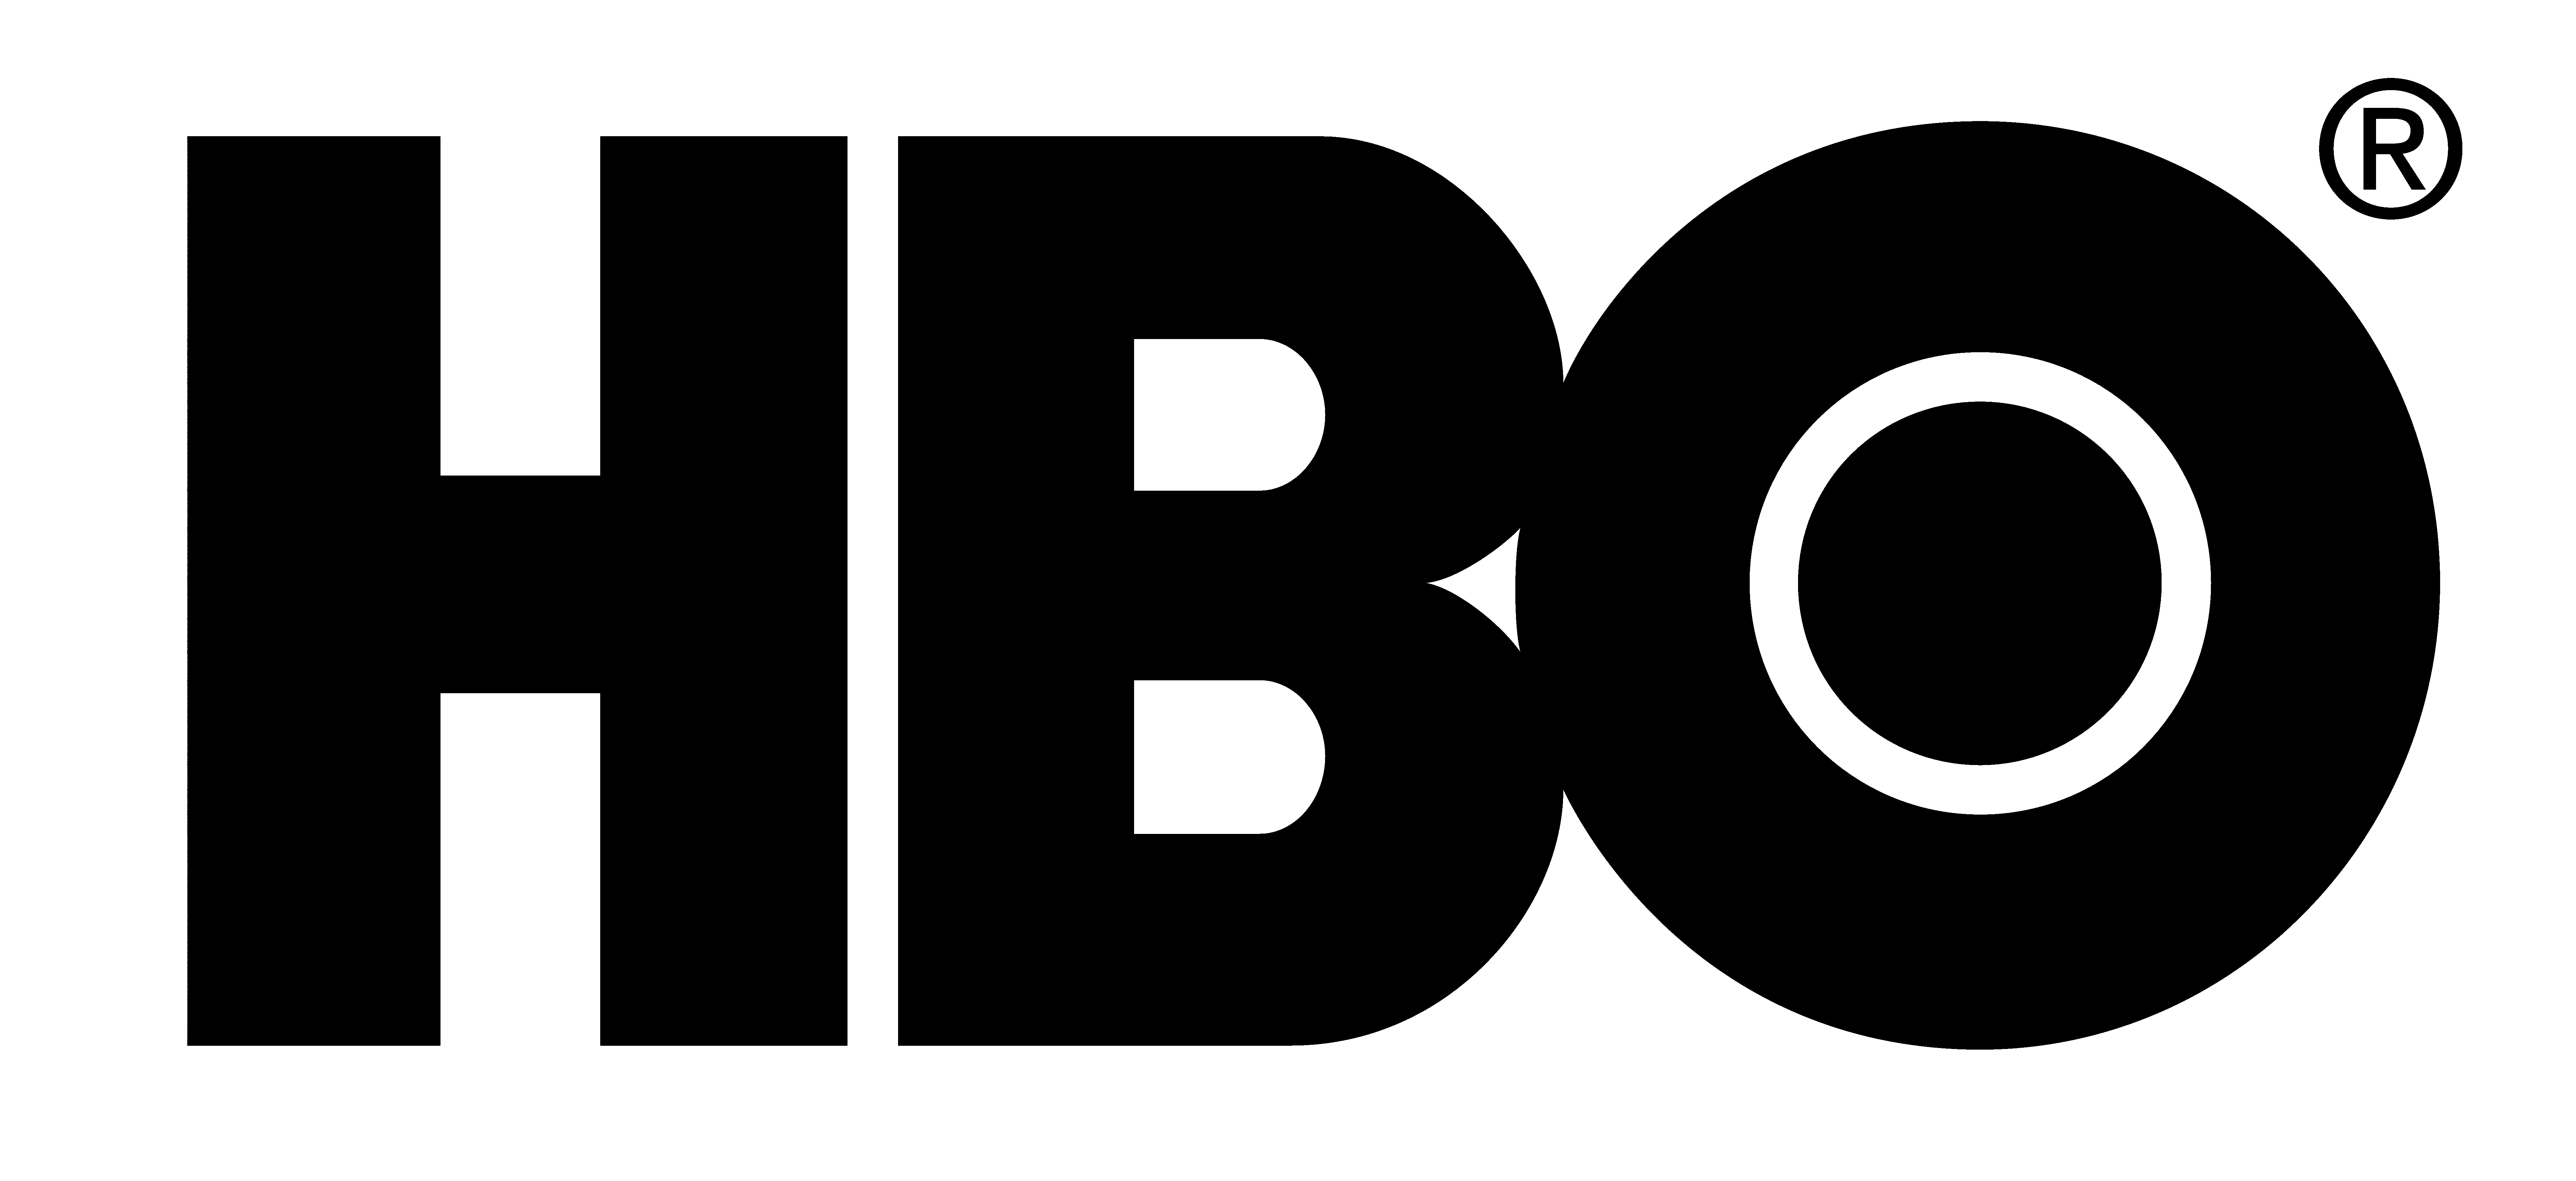 Some Logo - HBO – Logos Download